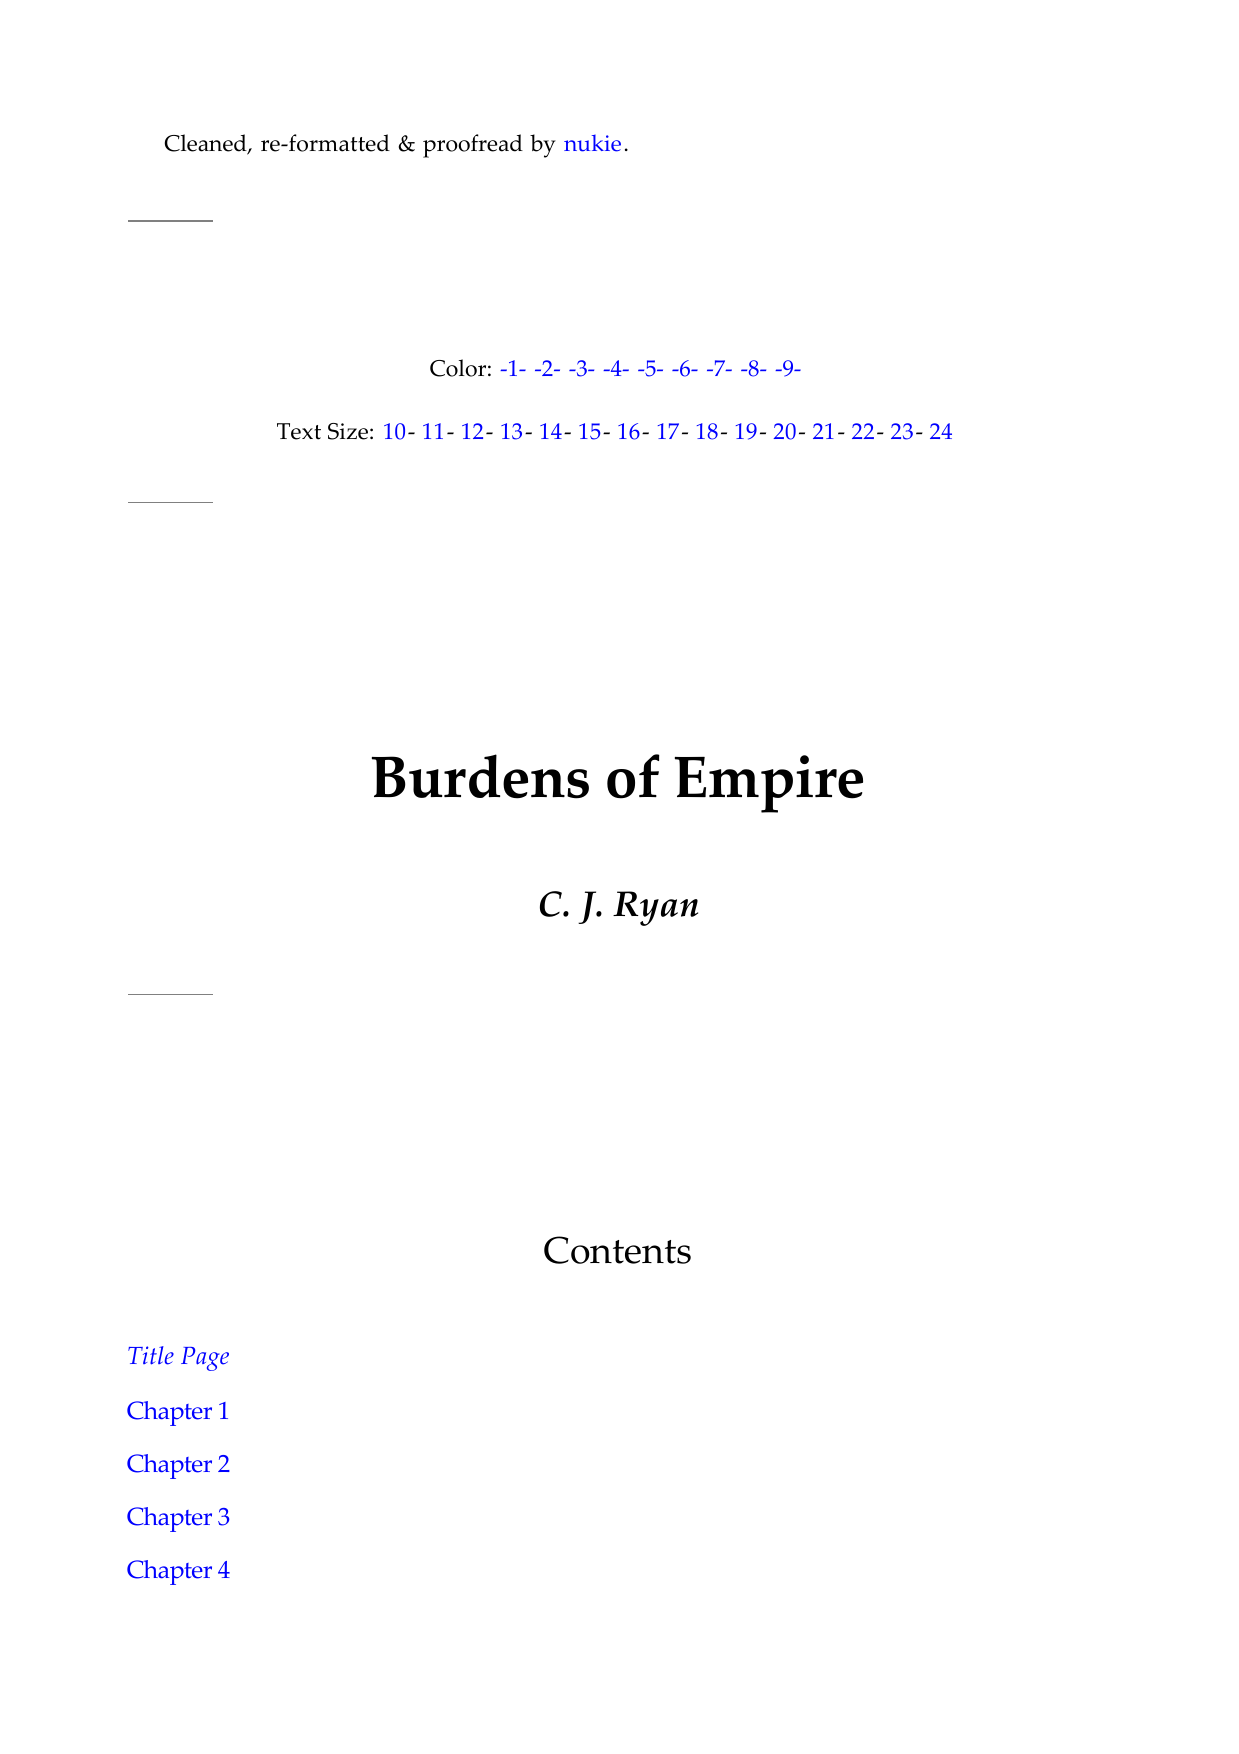 Burdens of Empire Burdens of Empire Burdens of Empire